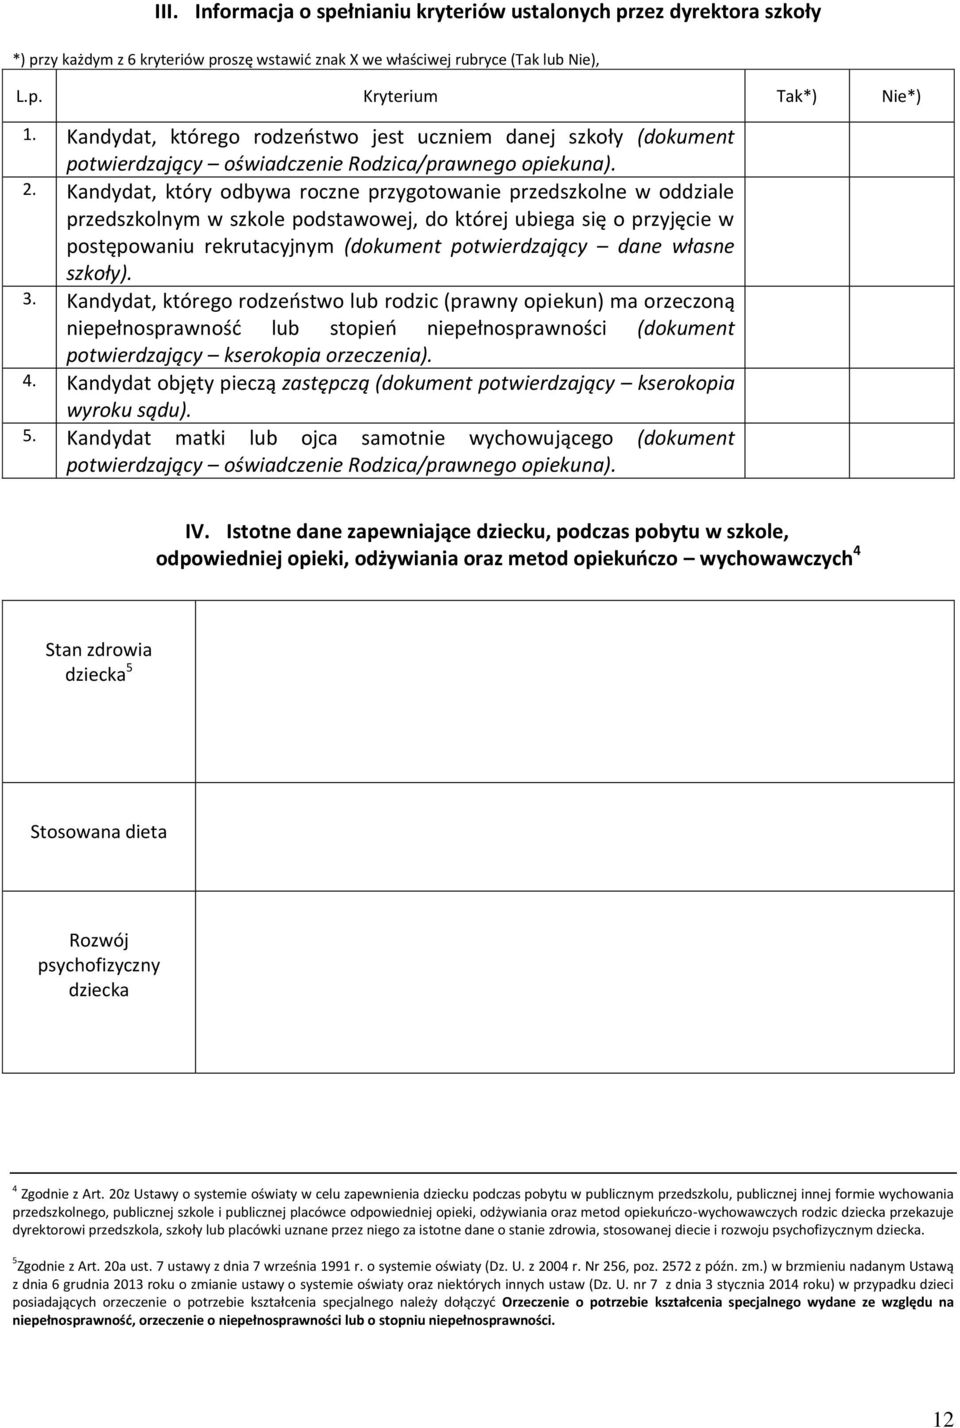 Kandydat, który odbywa roczne przygotowanie przedszkolne w oddziale przedszkolnym w szkole podstawowej, do której ubiega się o przyjęcie w postępowaniu rekrutacyjnym (dokument potwierdzający dane